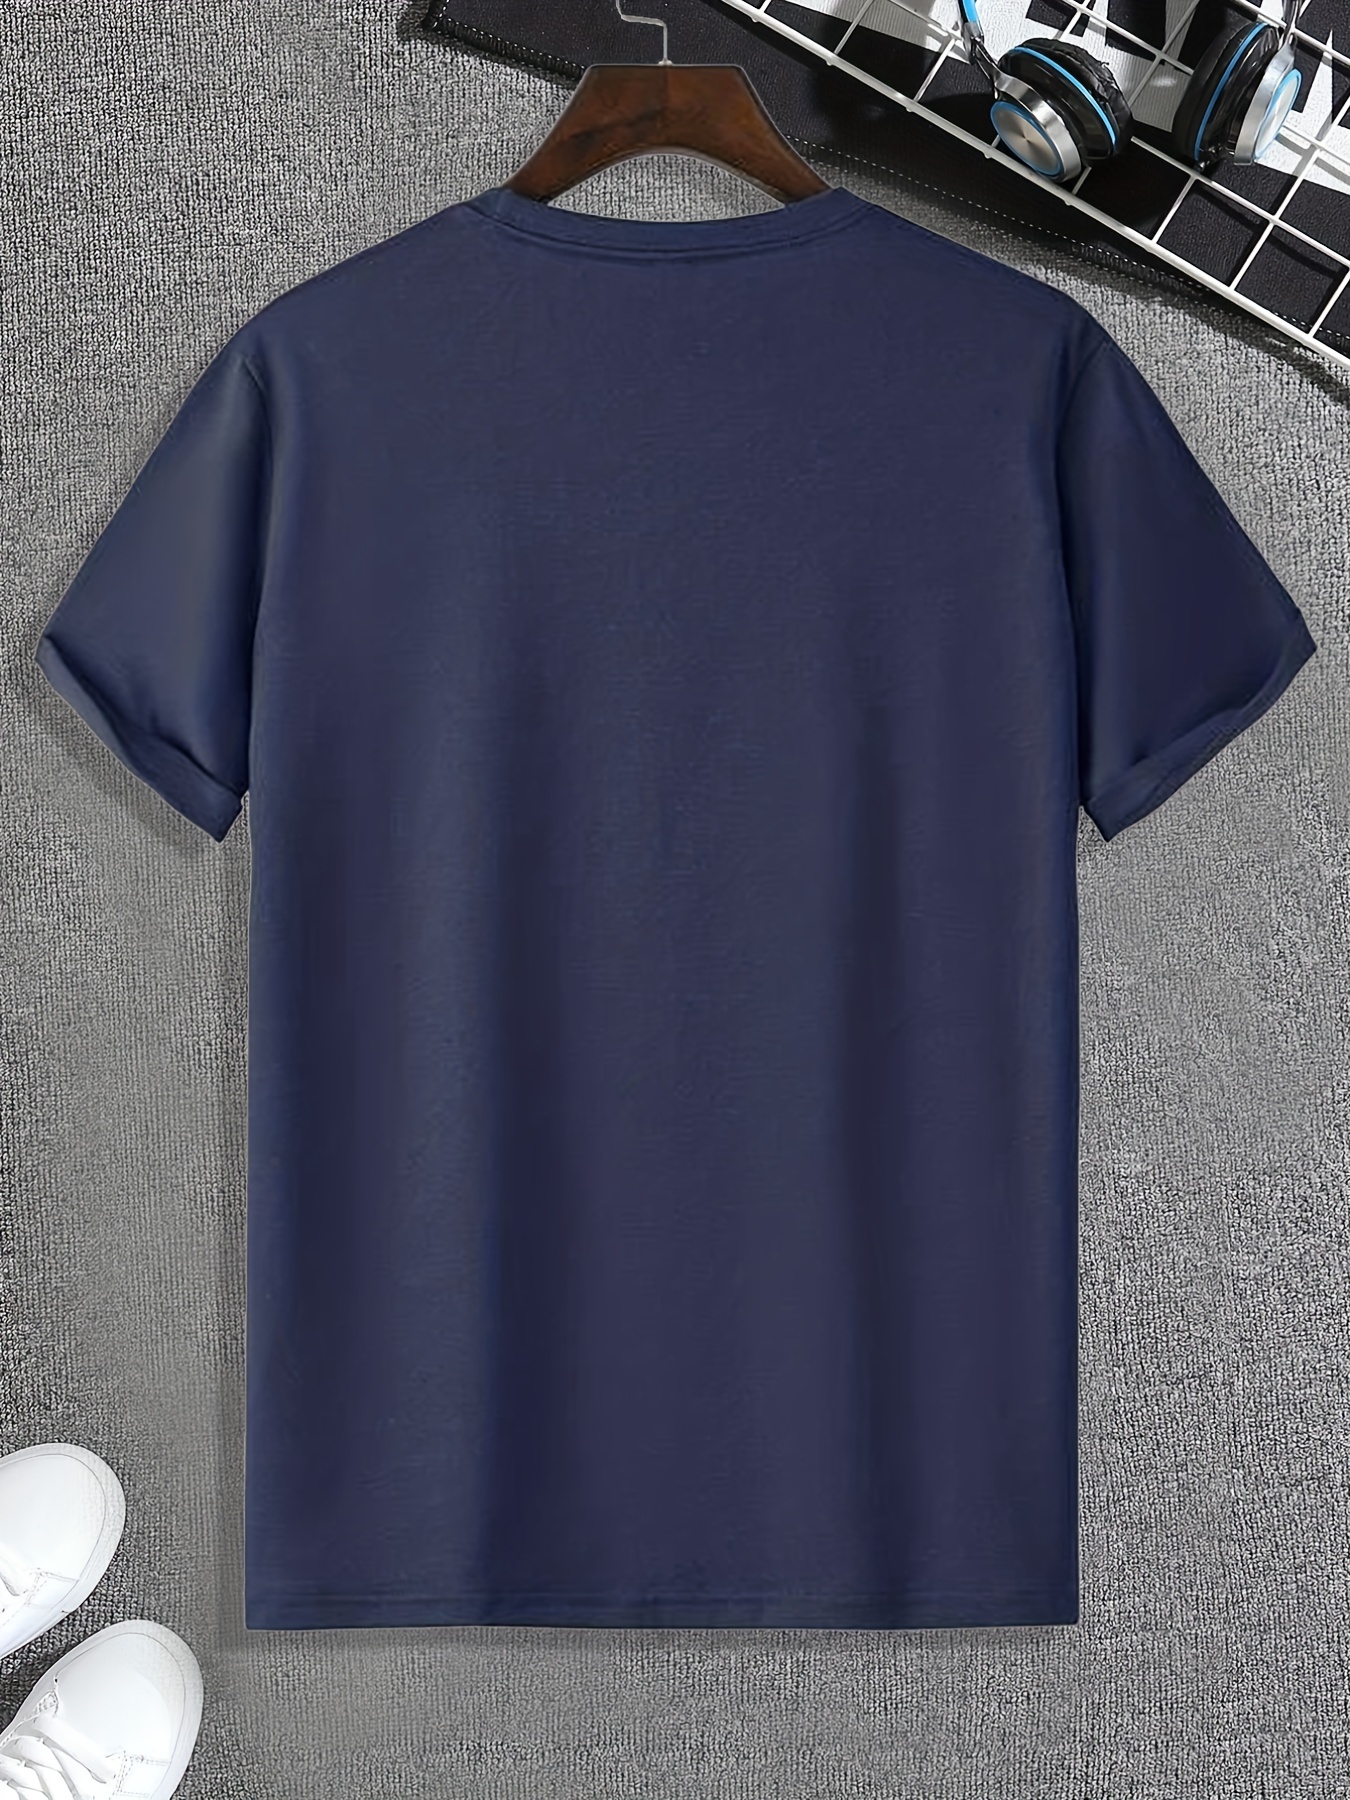 Camiseta Manga Corta Azul Marino, Camisetas Premium